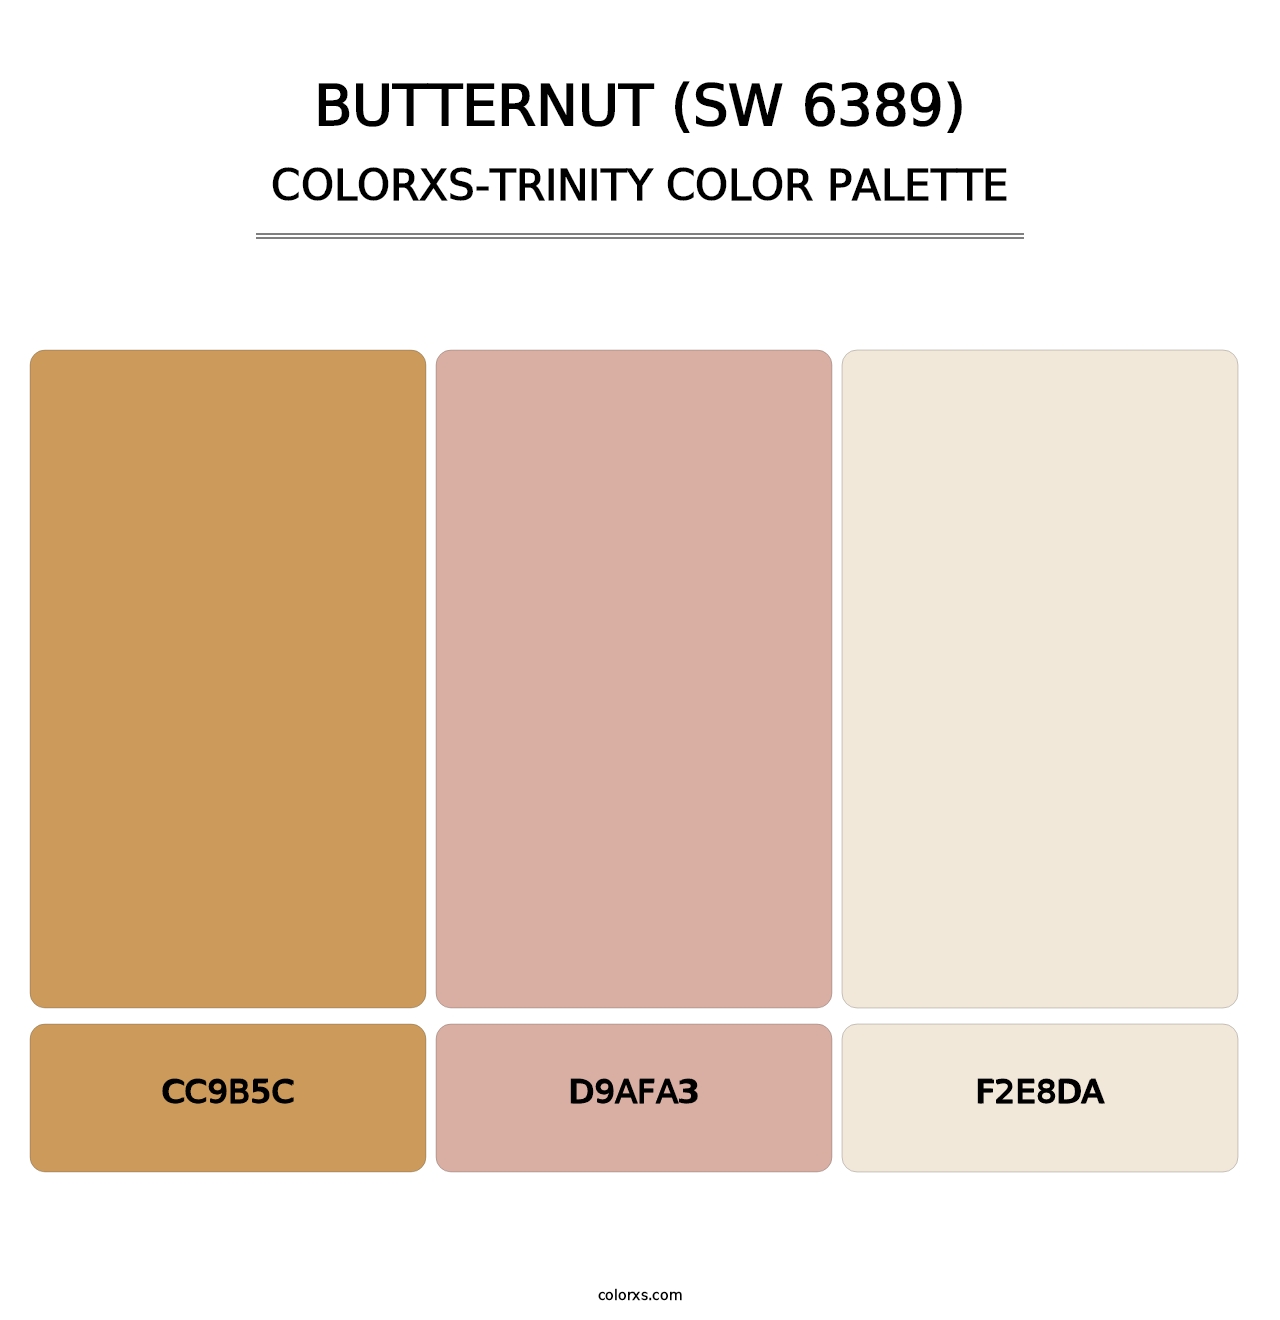 Butternut (SW 6389) - Colorxs Trinity Palette